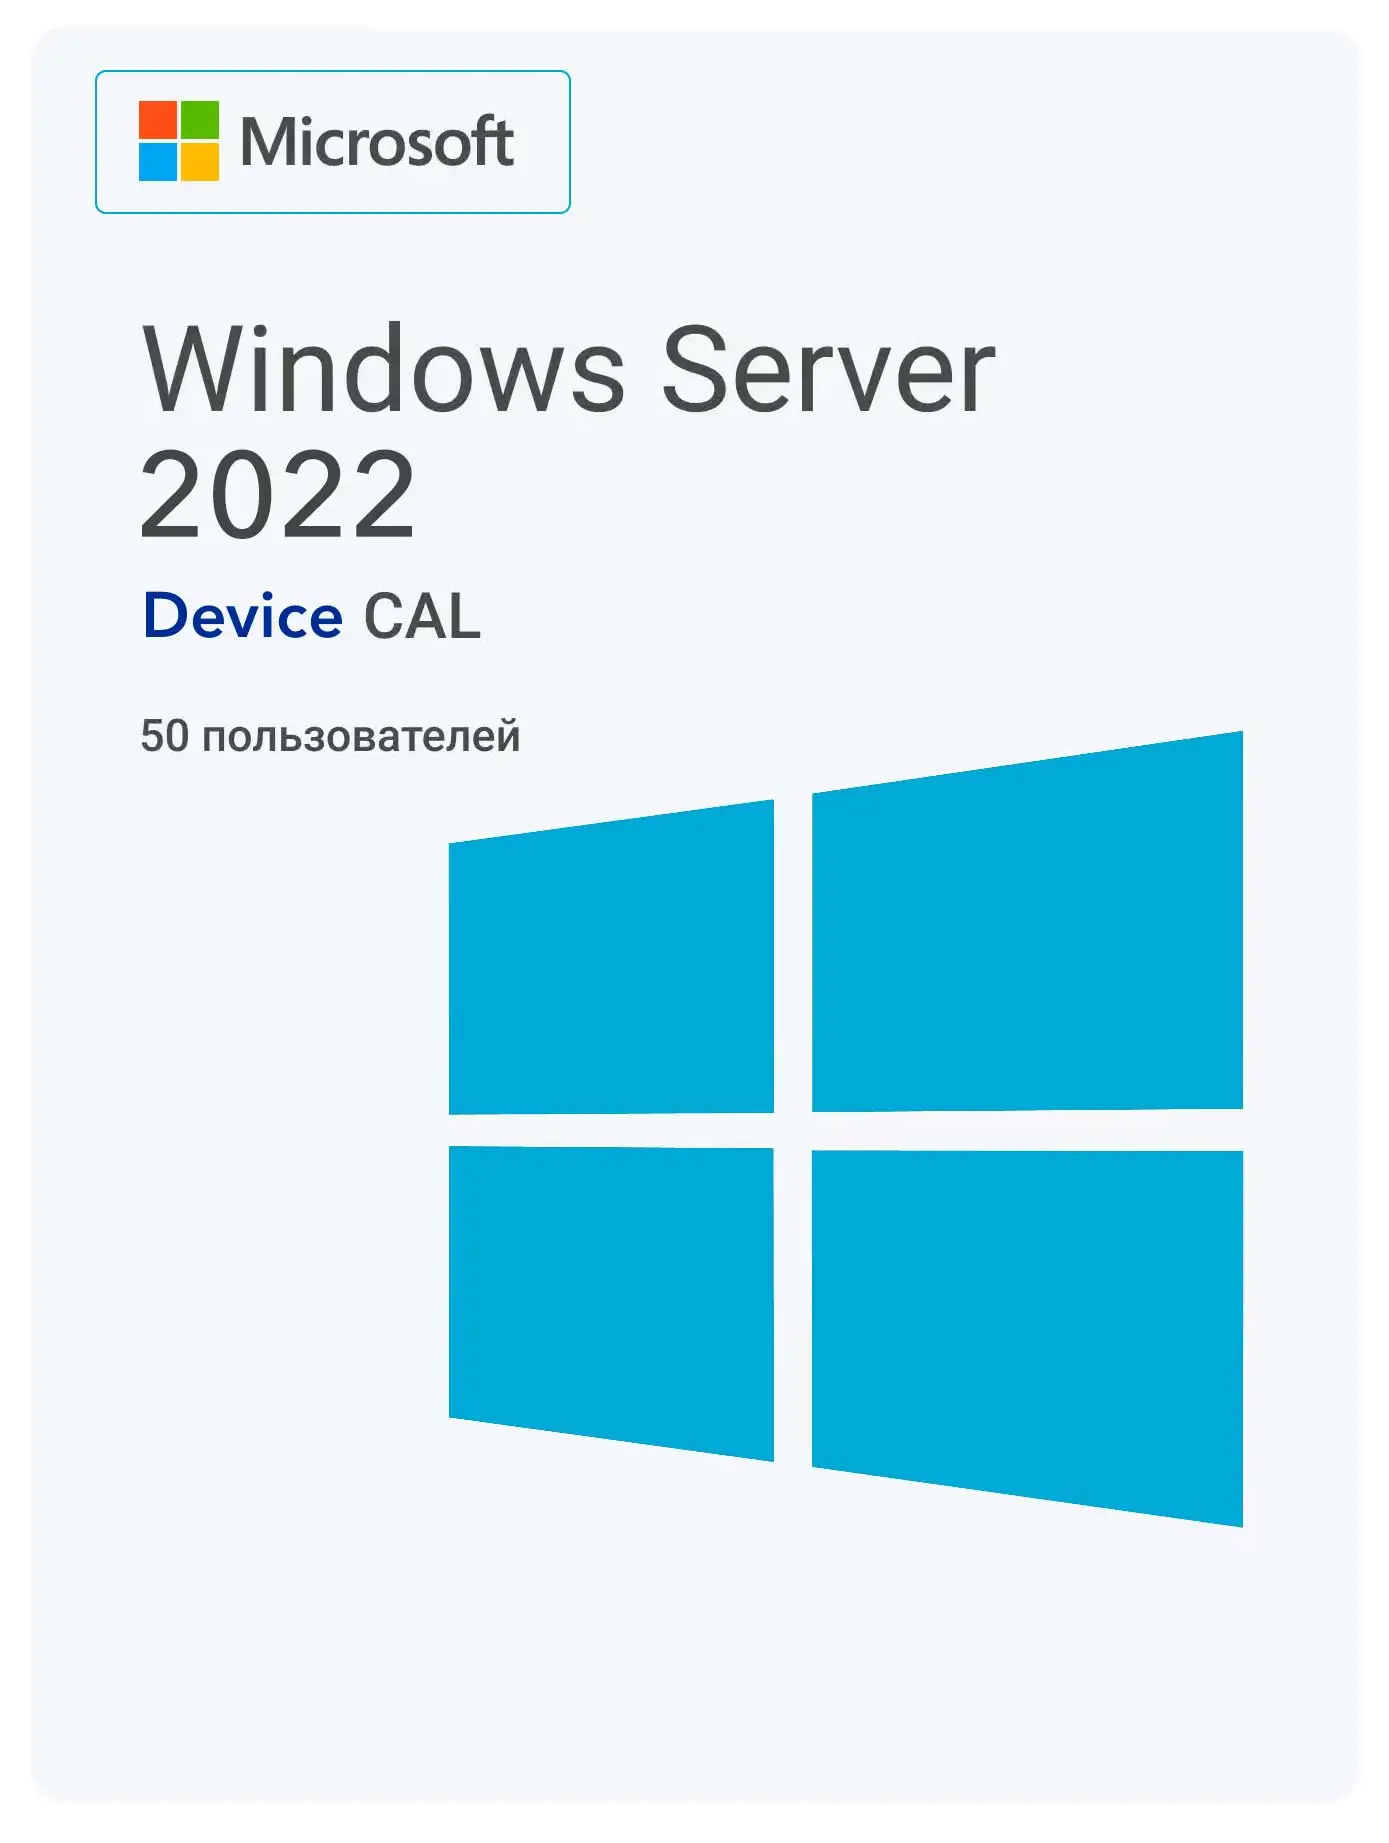 Windows Server 2022 RDS Device CAL (50 пользователей)